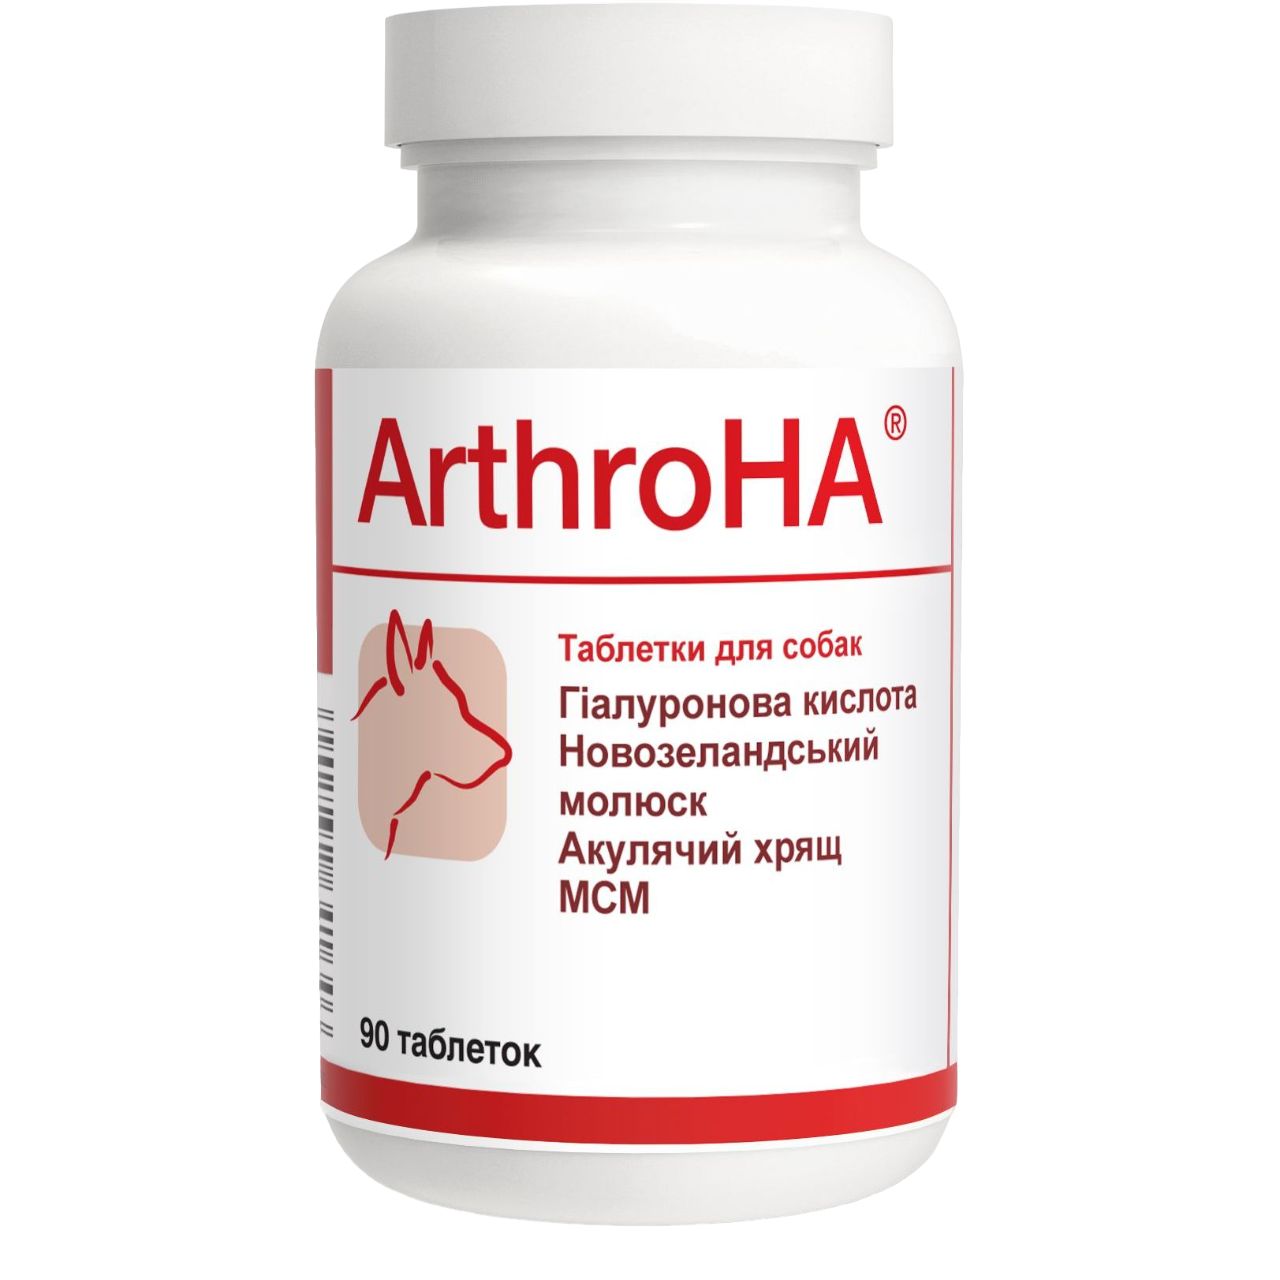 Photos - Dog Medicines & Vitamins Dolfos Вітамінно-мінеральна добавка  Arthro HA, хондропротектор для лікуван 